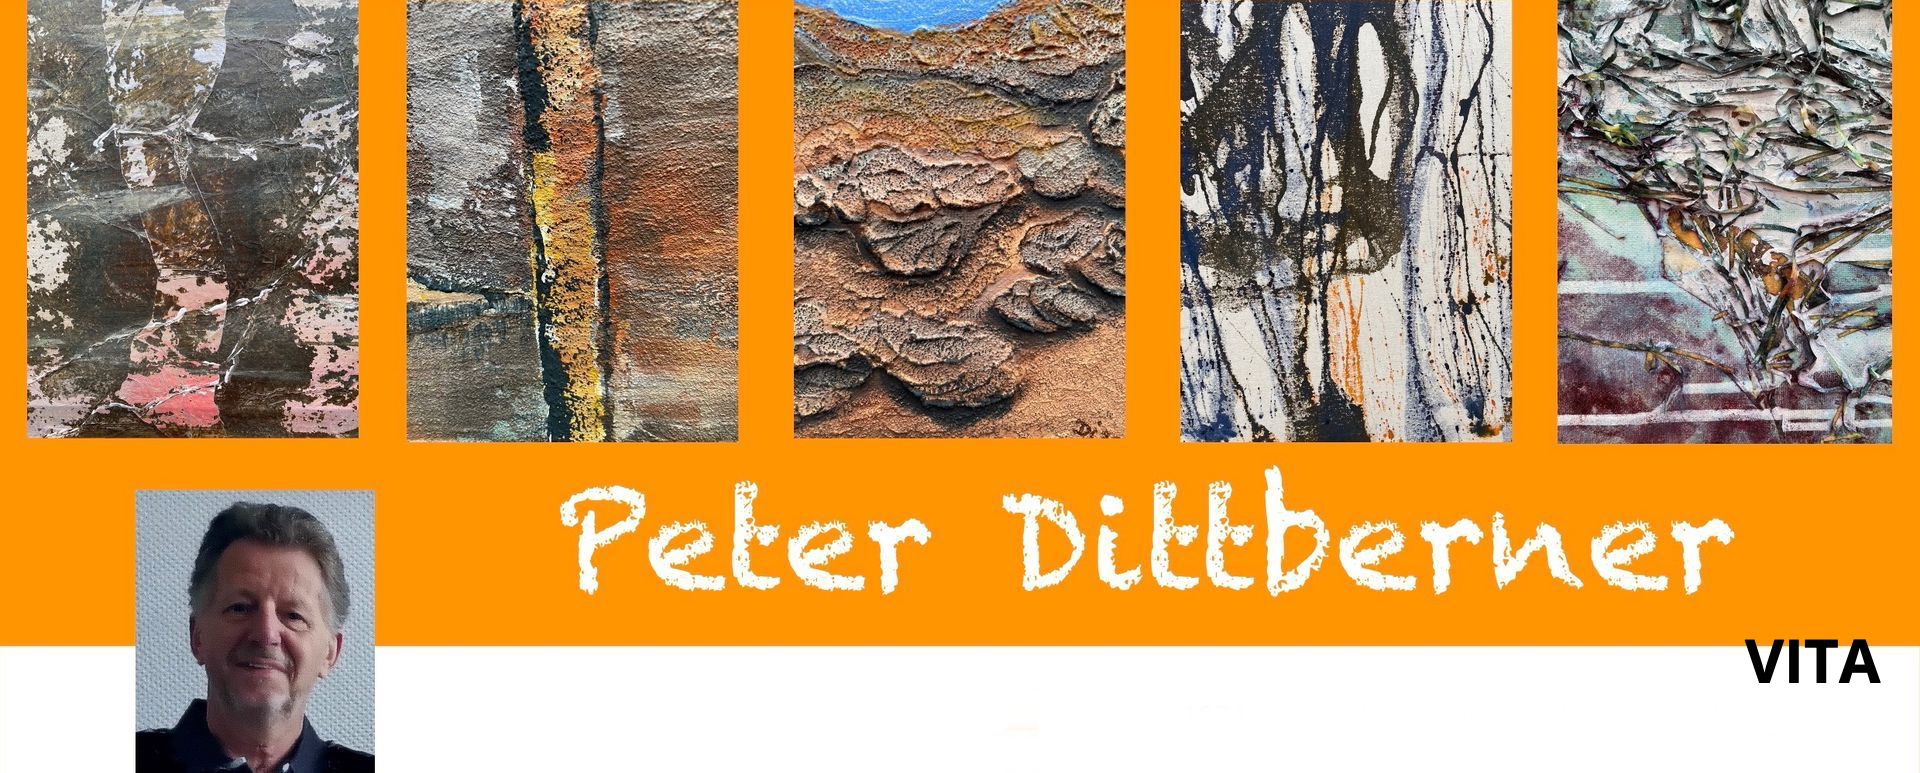 Peter Dittberner Vita